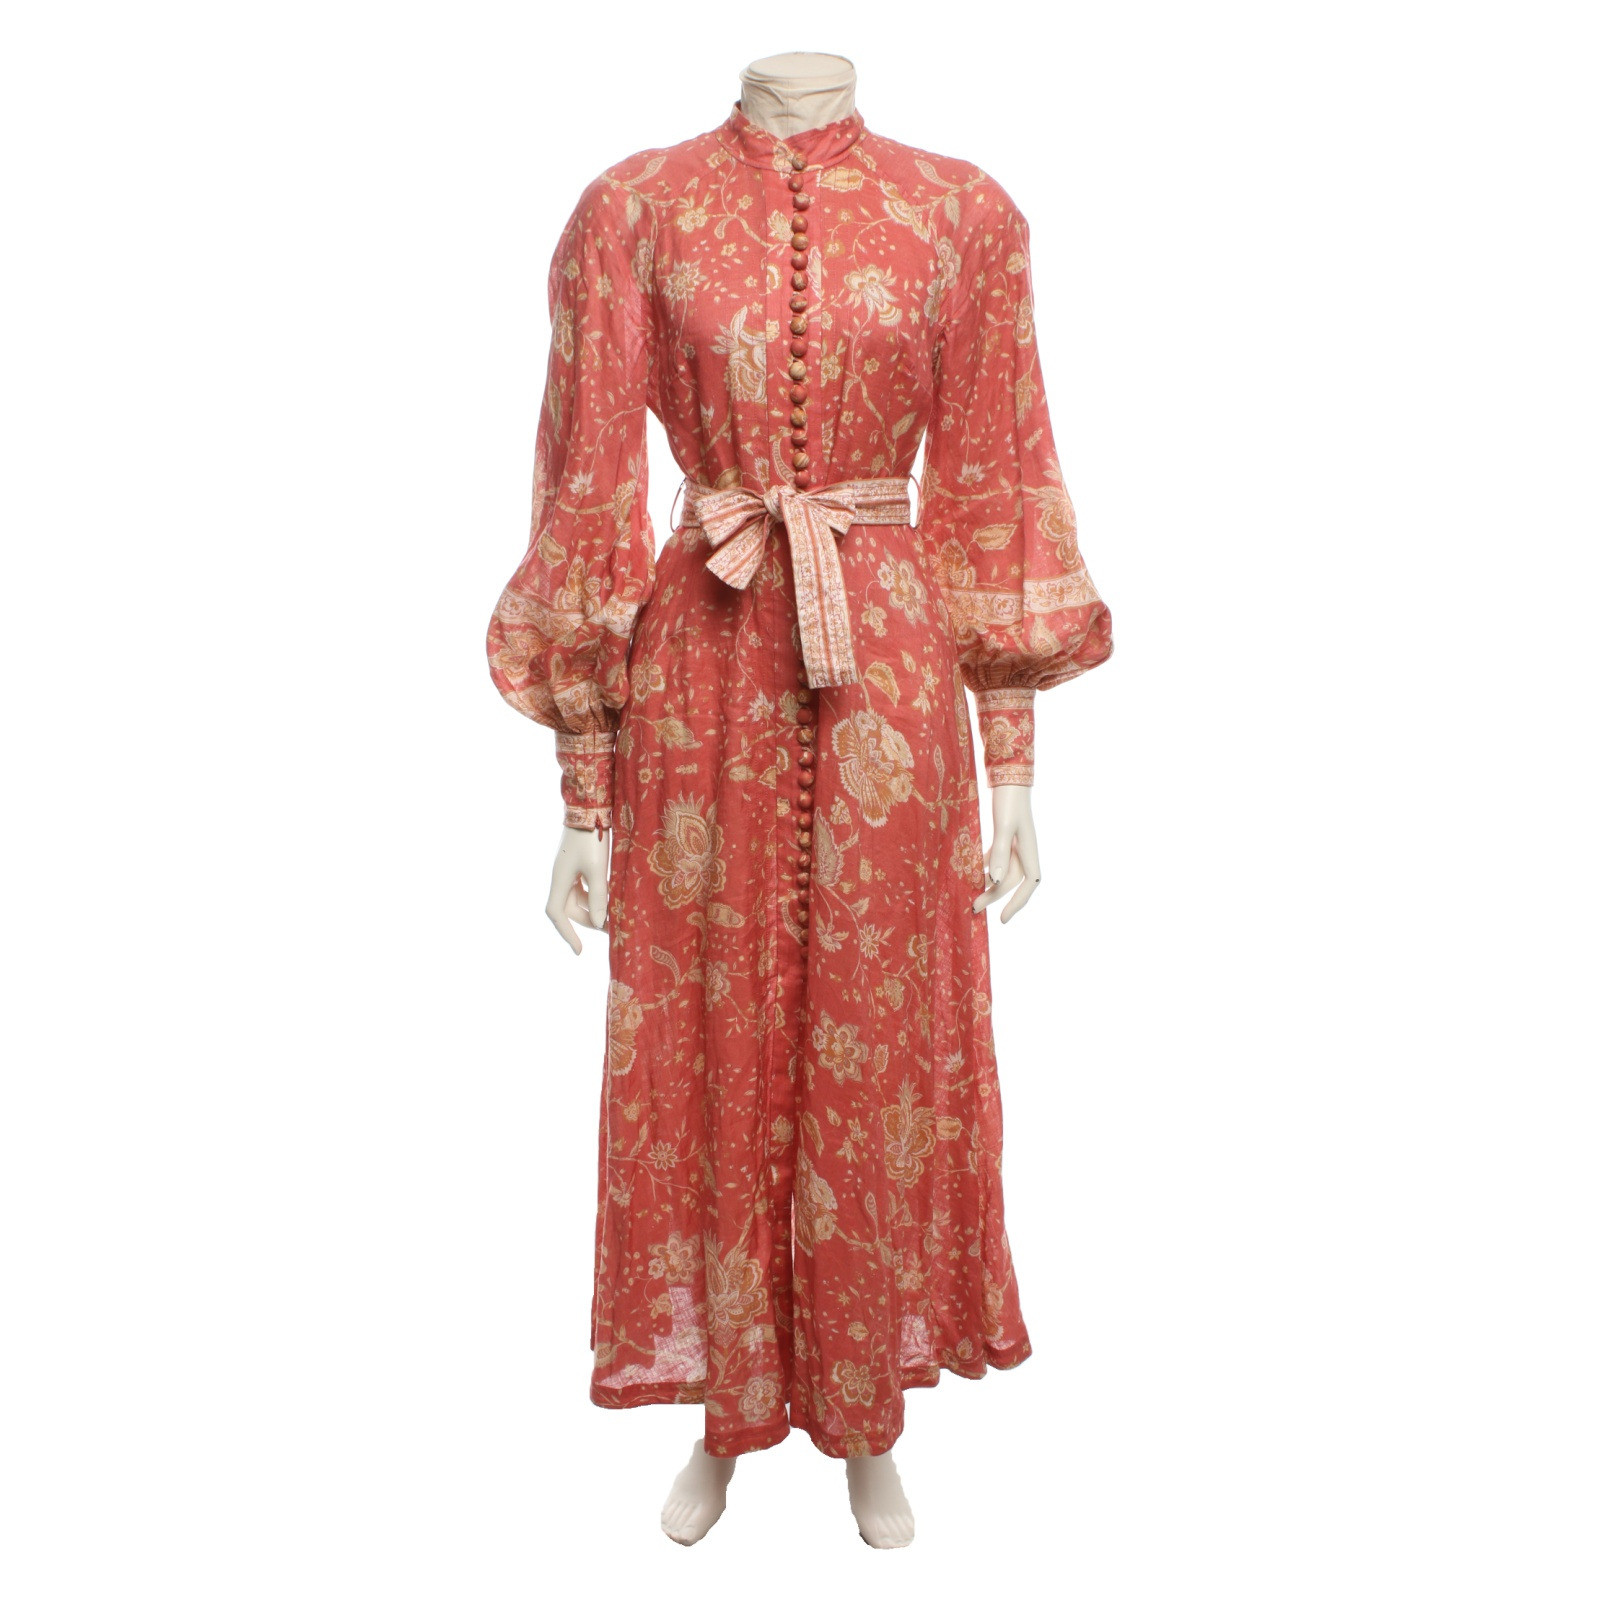 Zimmermann Kleid - Second Hand Zimmermann Kleid gebraucht kaufen für 349€  (6272149)